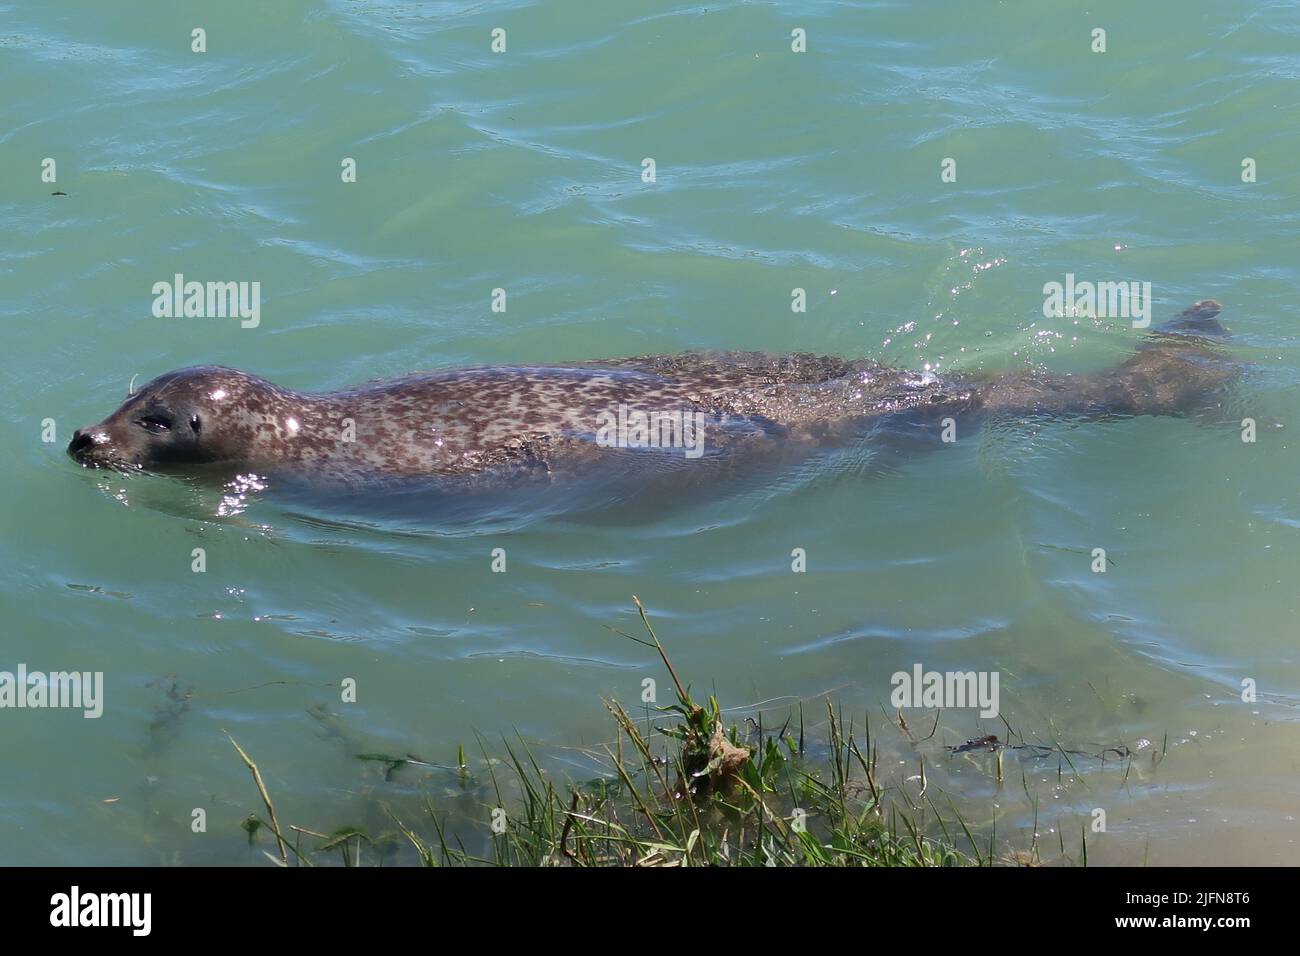 Una gran foca gris nada en el río Arun, West Sussex, Reino Unido. Ubicación inusual 3 millas tierra adentro del mar, pero bien conocido localmente desde hace varios años. Foto de stock